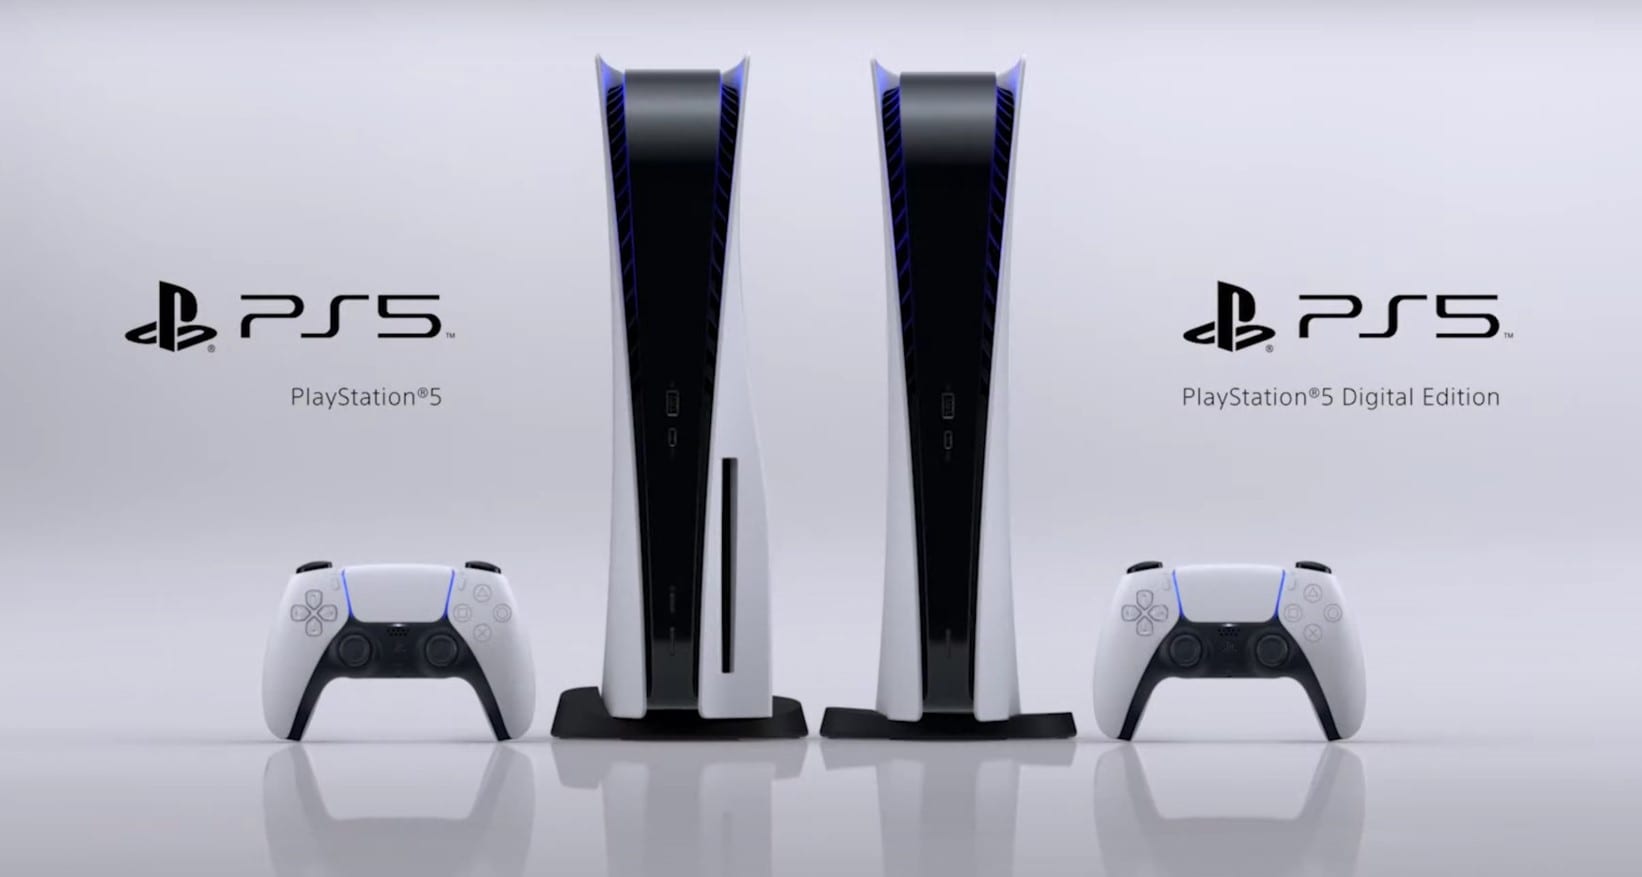 كشفت Sony النقاب عن جهاز PlayStation 5 و PlayStation 5 Digital Edition